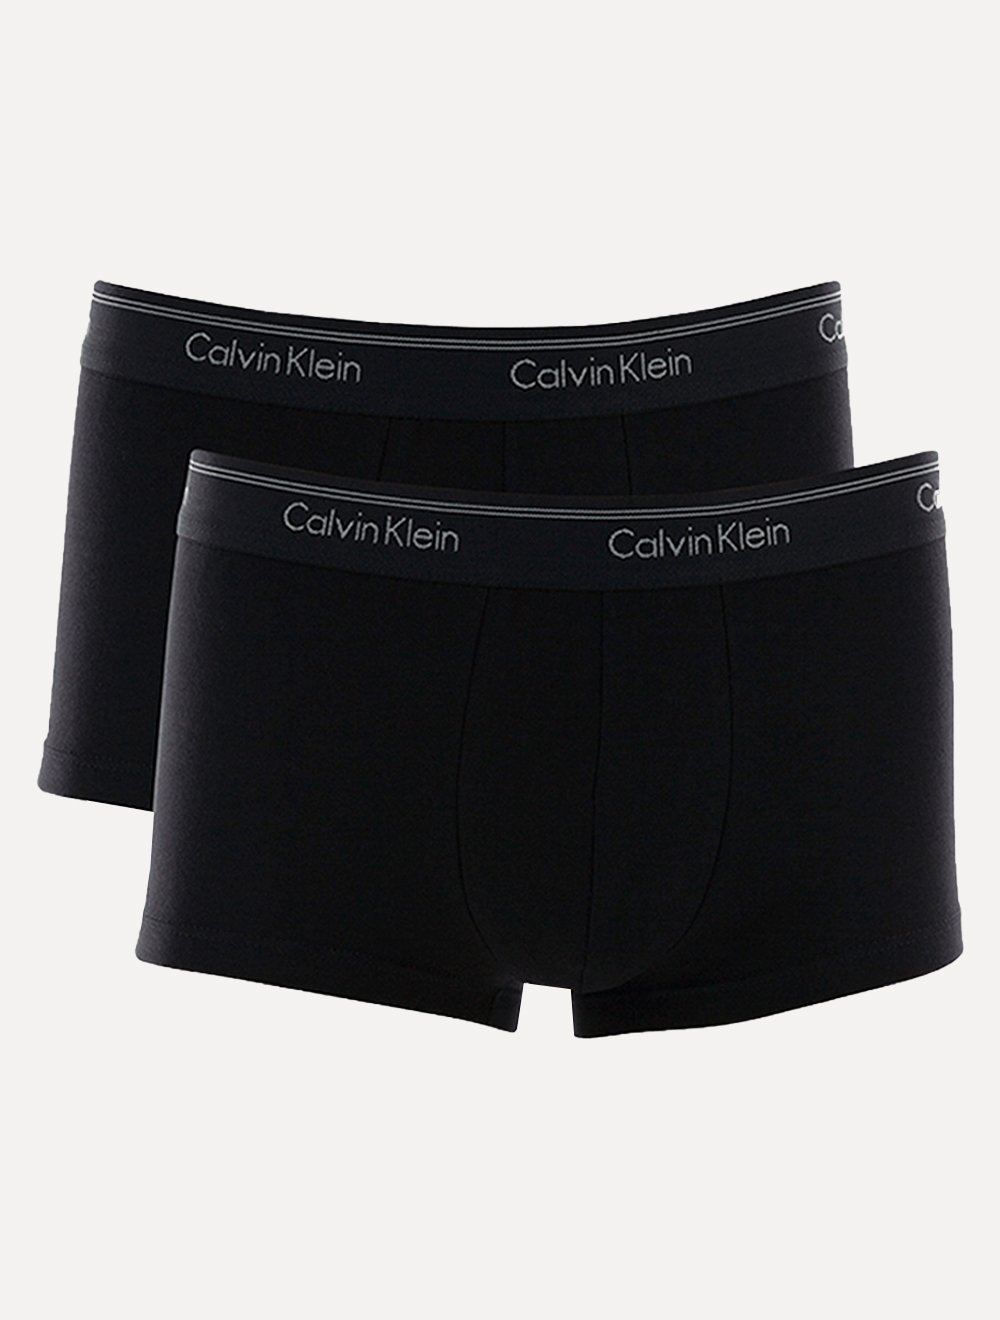 Cueca Calvin Klein Low Rise Trunk Preta C11.02 PT00 Pack 2UN